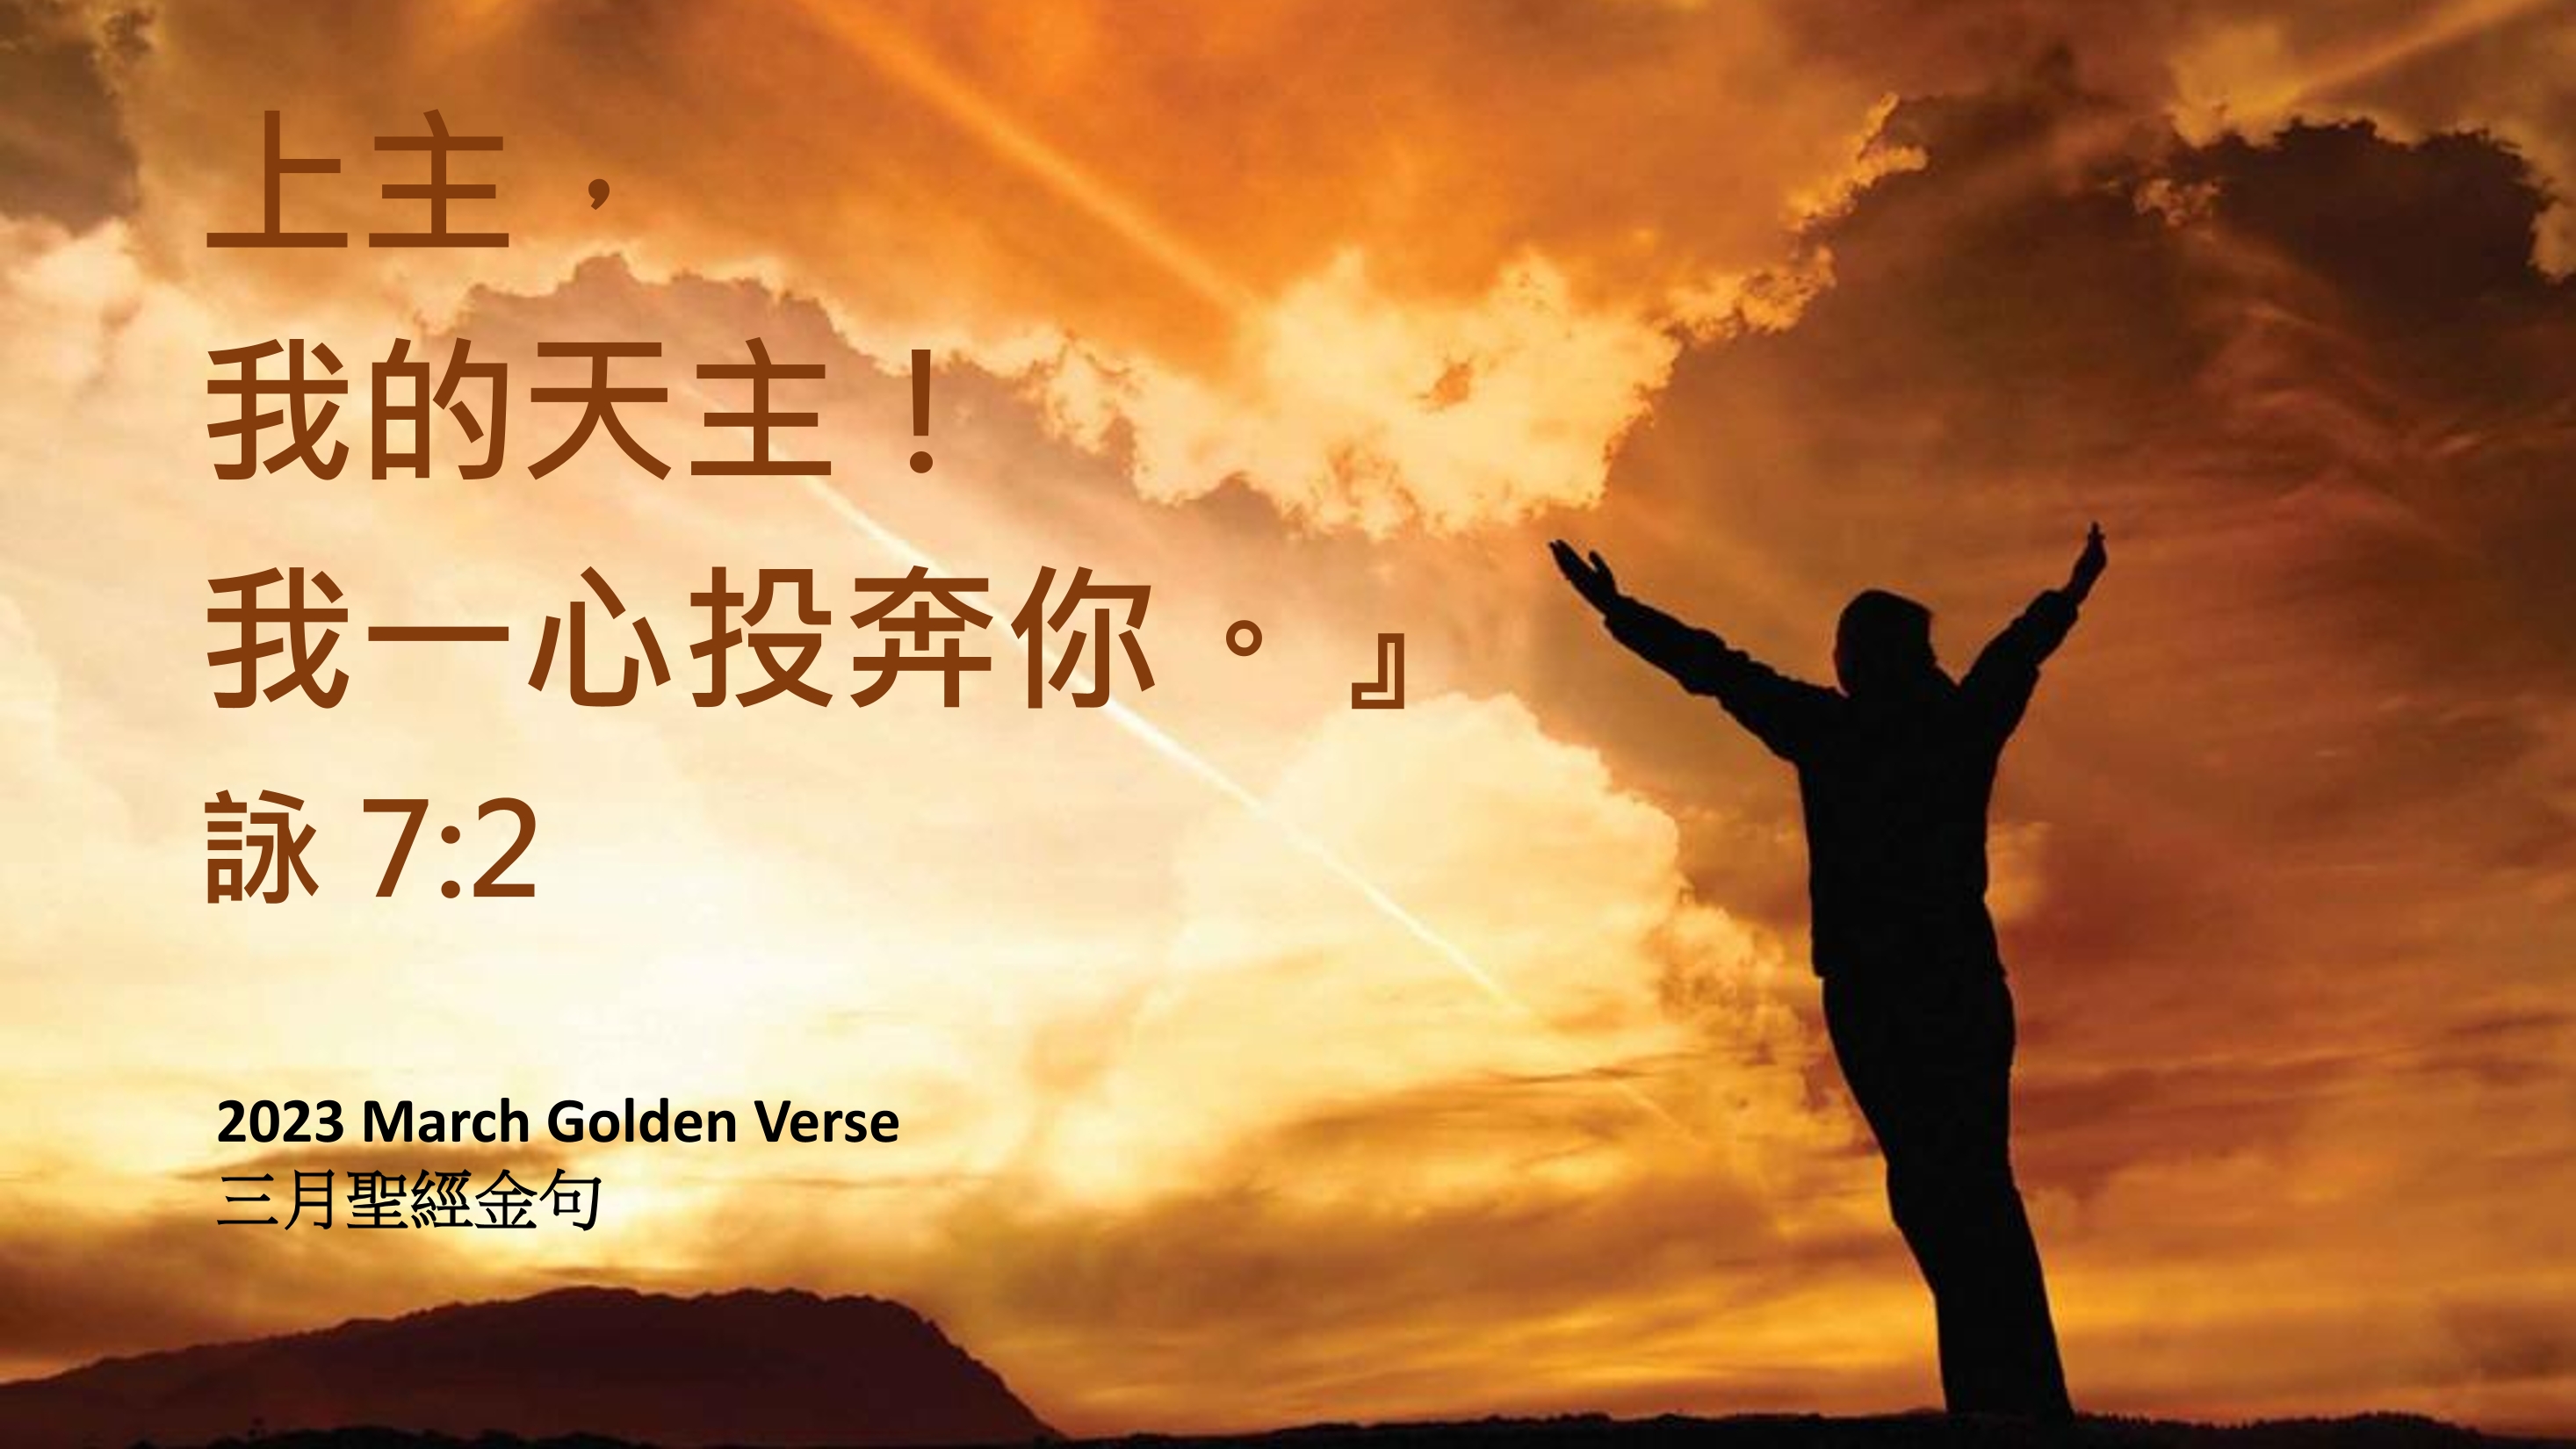 Golden-verse-202303-cn.jpg